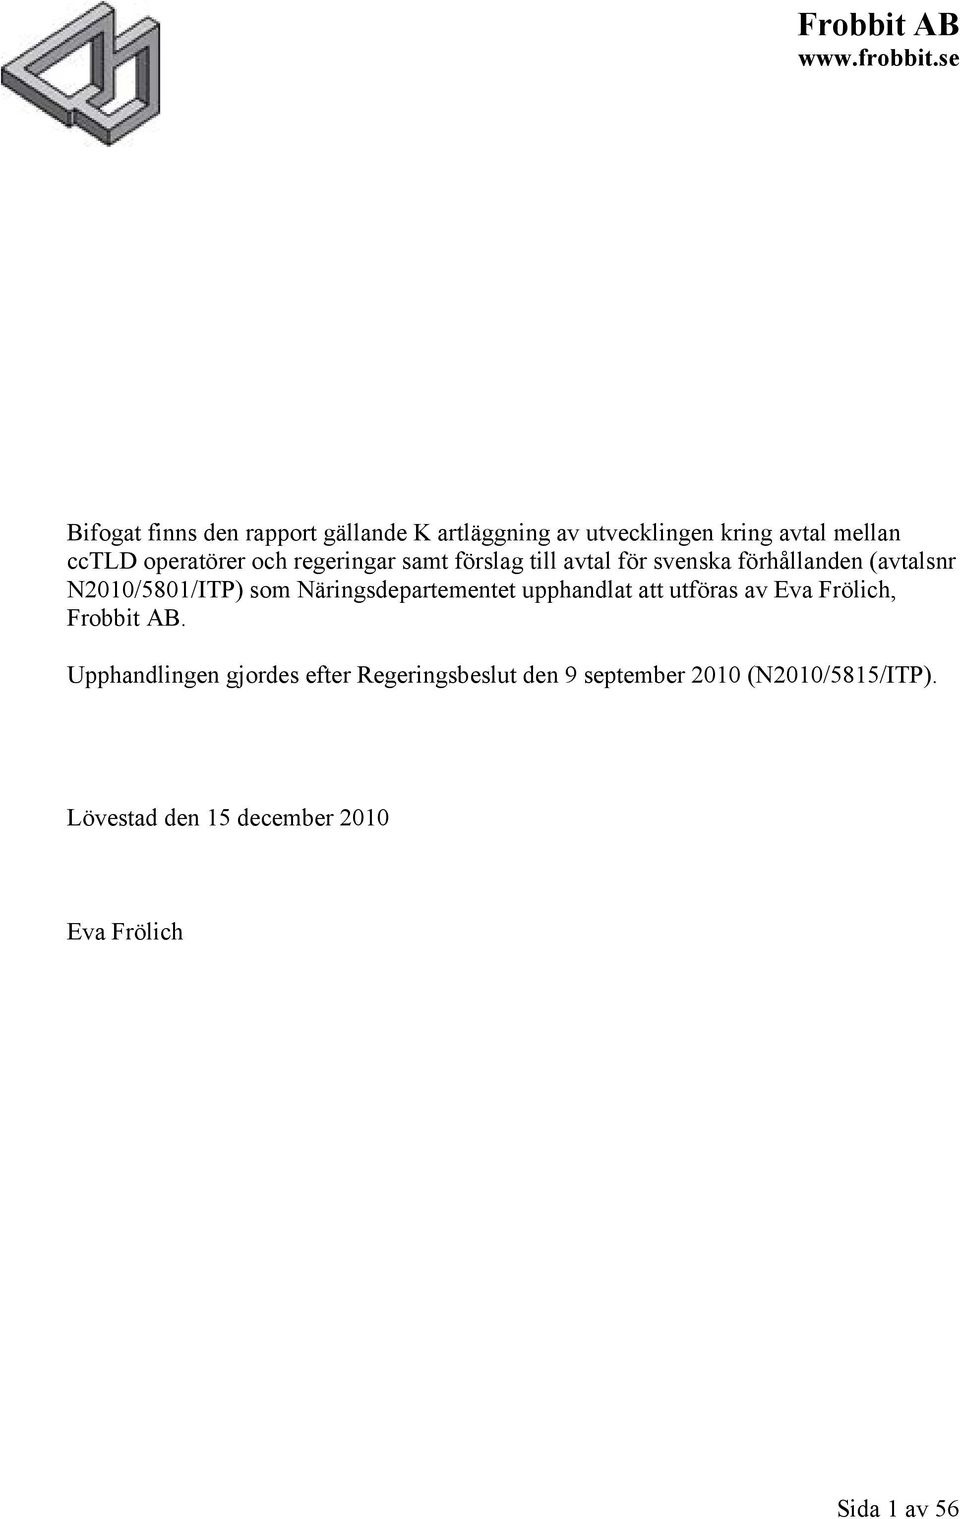 regeringar samt förslag till avtal för svenska förhållanden (avtalsnr N2010/5801/ITP) som